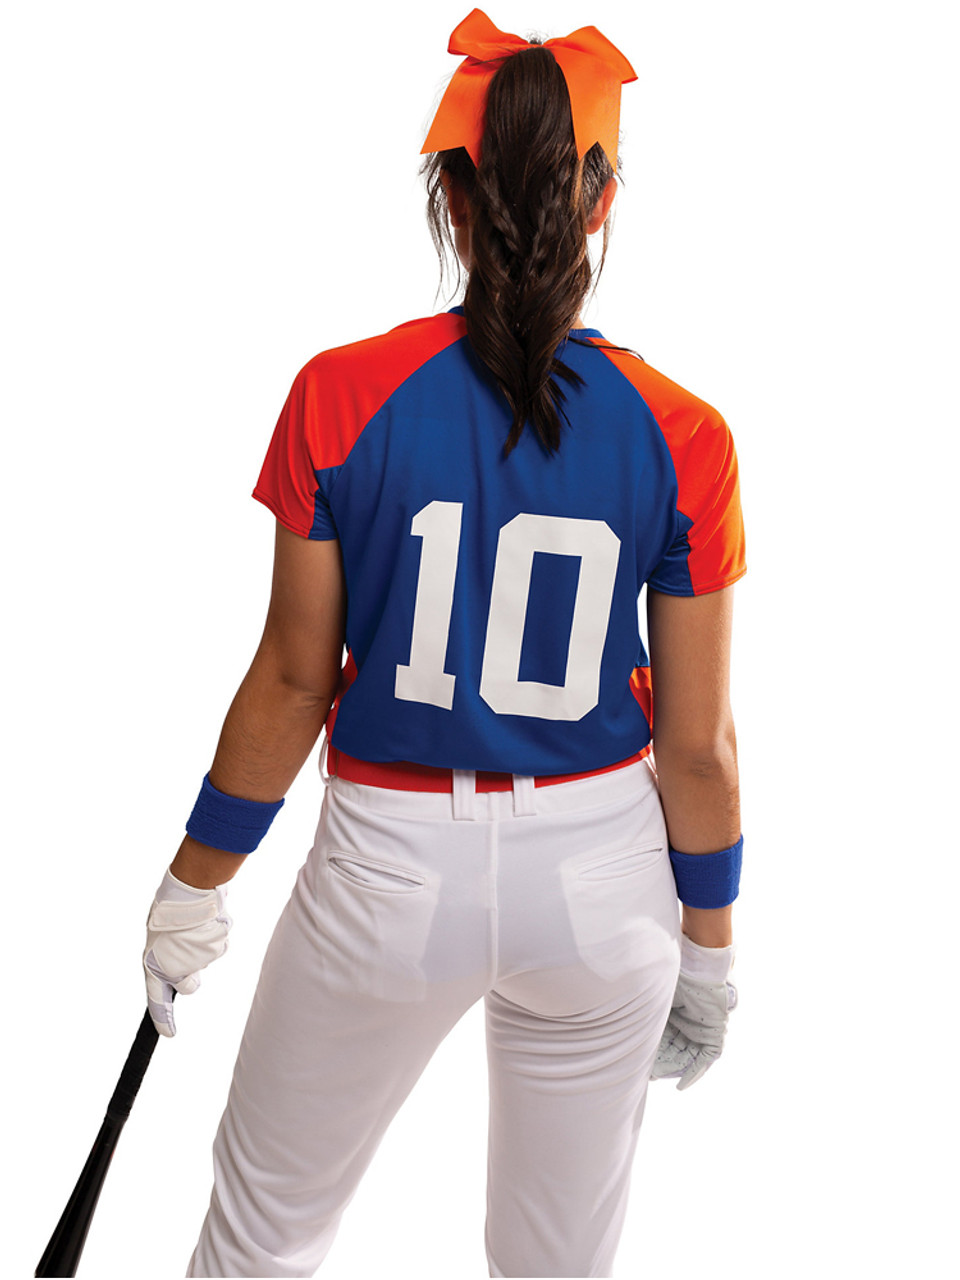 Womens/Girls Smooth Performance Cutter Softball Uniform Set